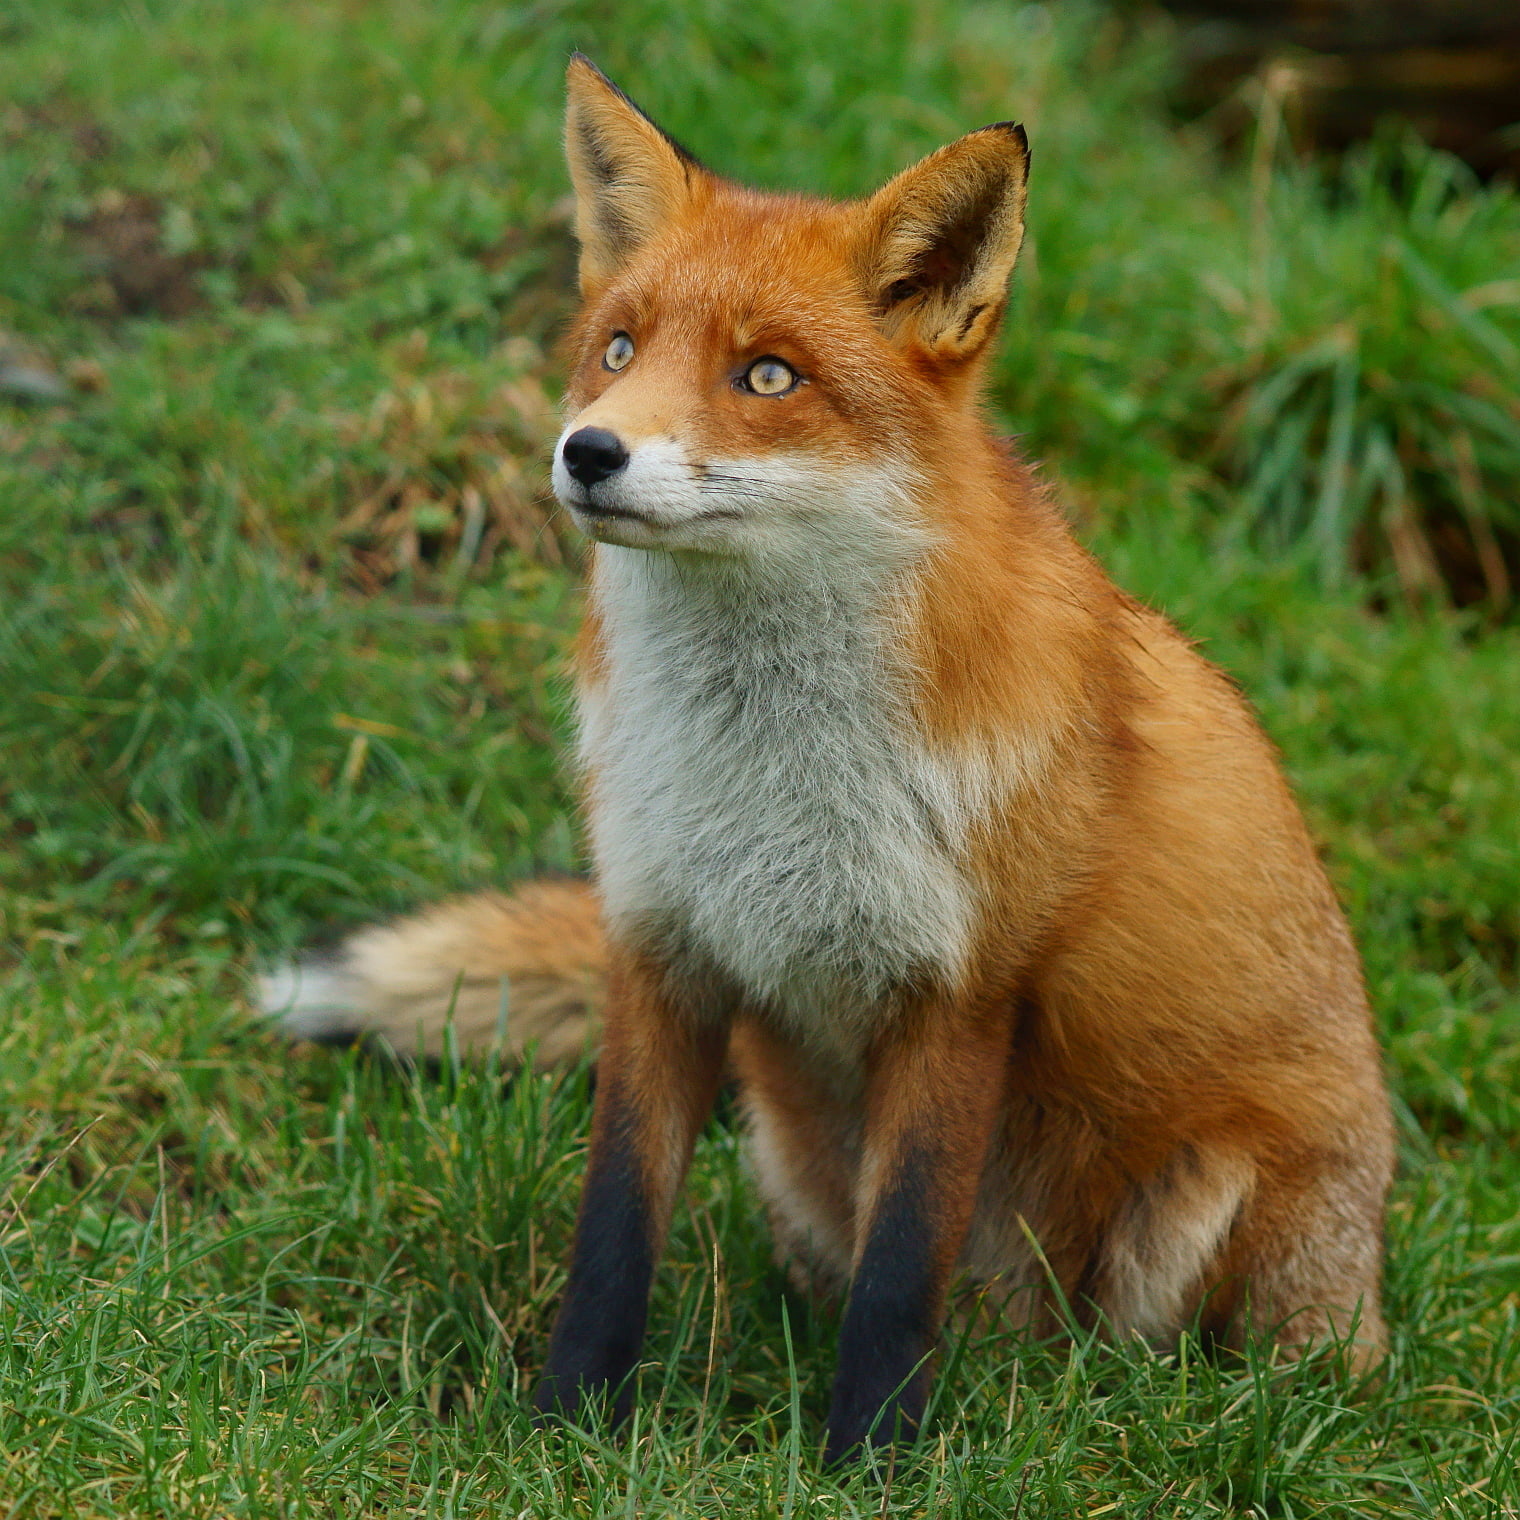 fox on grass field, British  Wildlife  Centre, Newchapel  Surrey